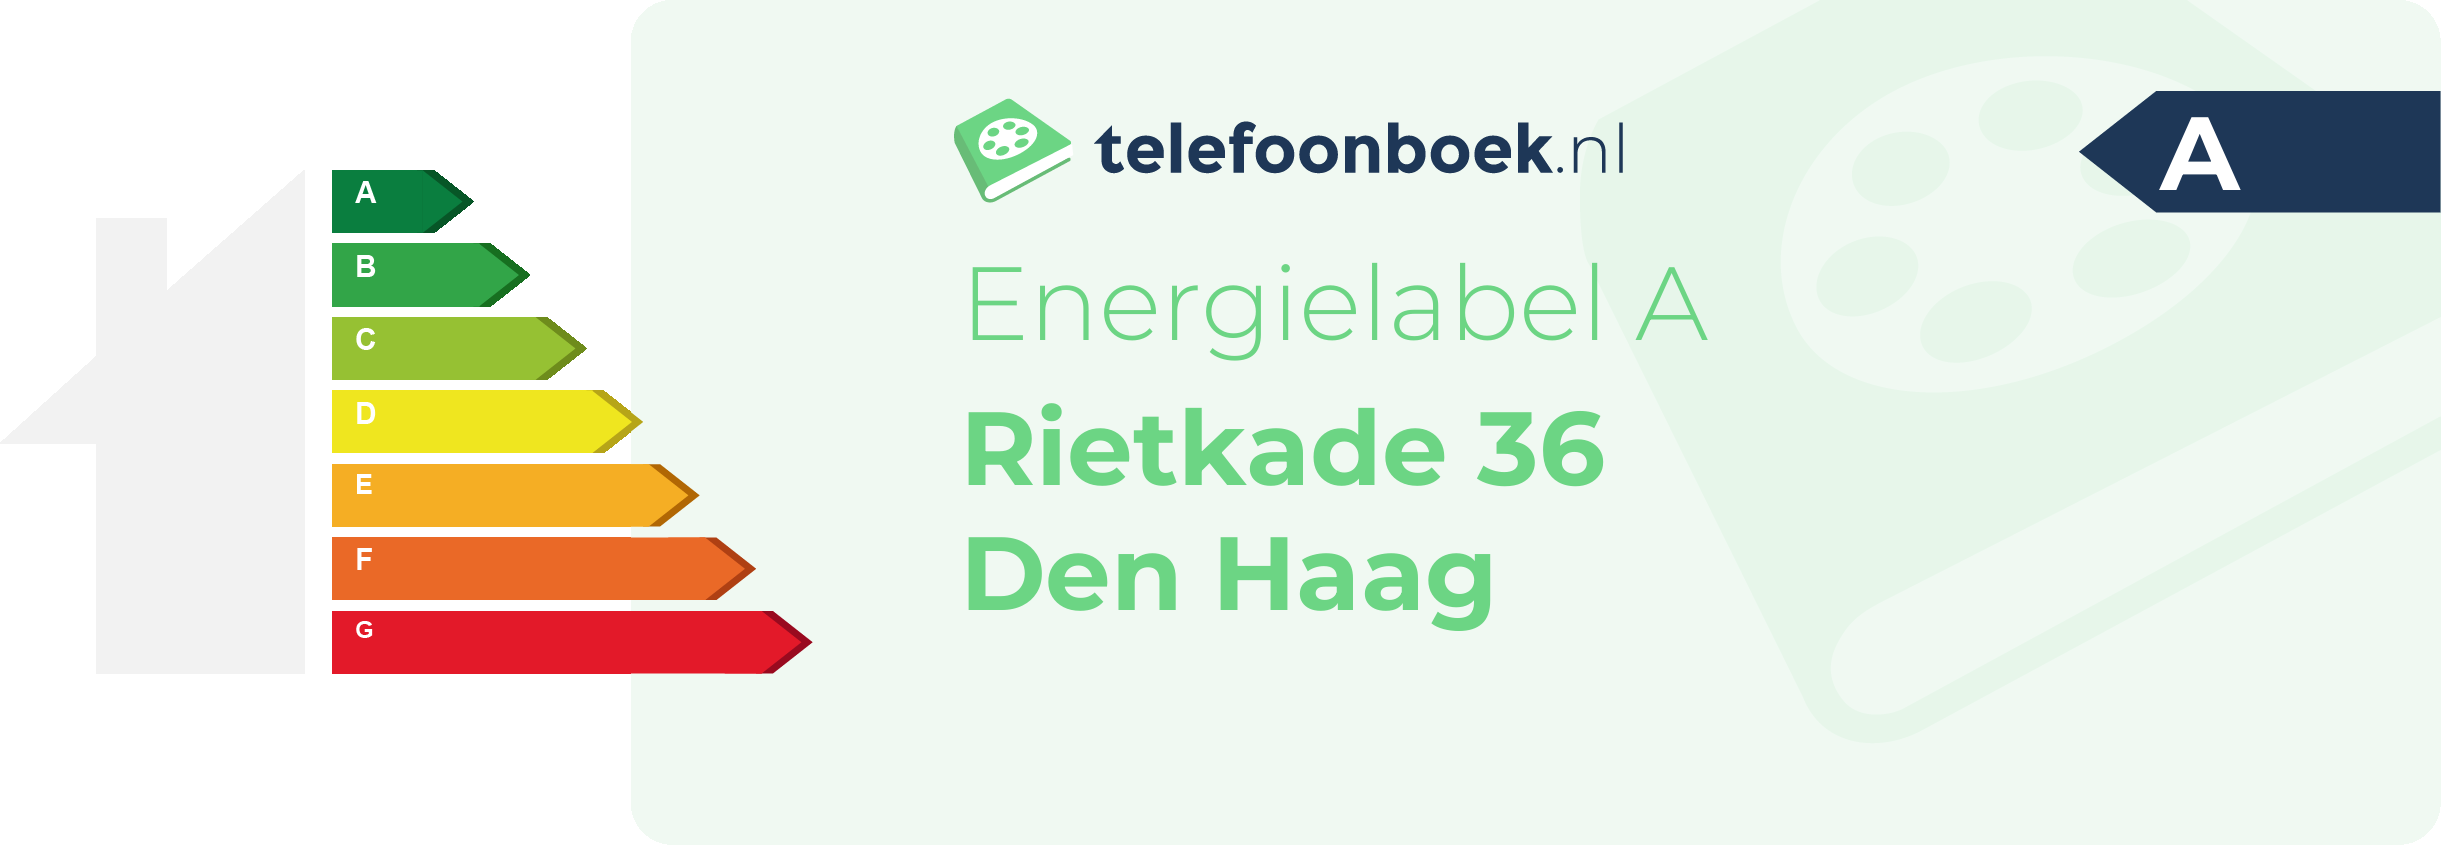 Energielabel Rietkade 36 Den Haag